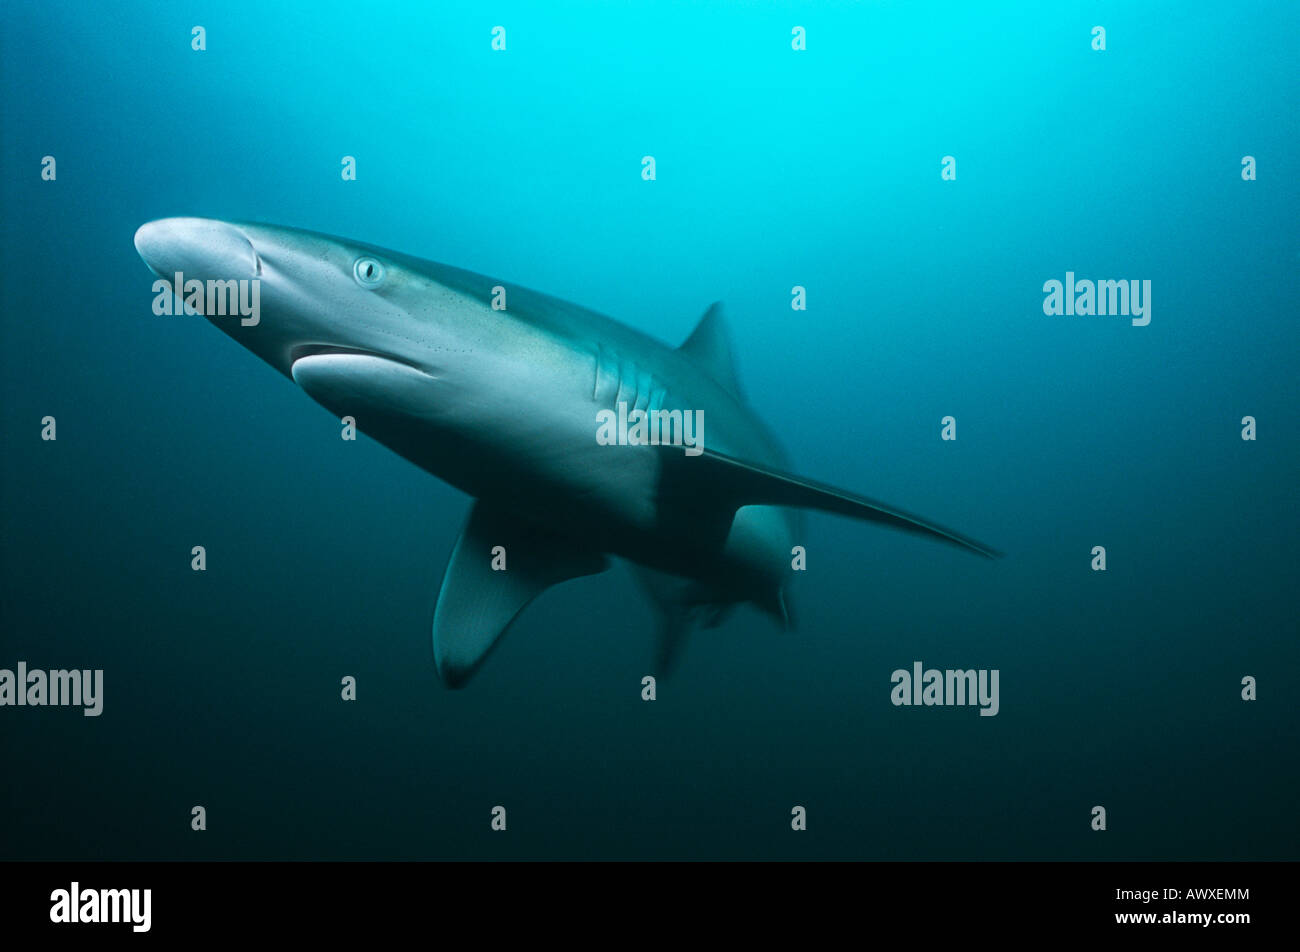 Aliwal Shoal, Indian Ocean, South Africa, tiger shark (Galeocerdo cuvieri) swimming in ocean Stock Photo